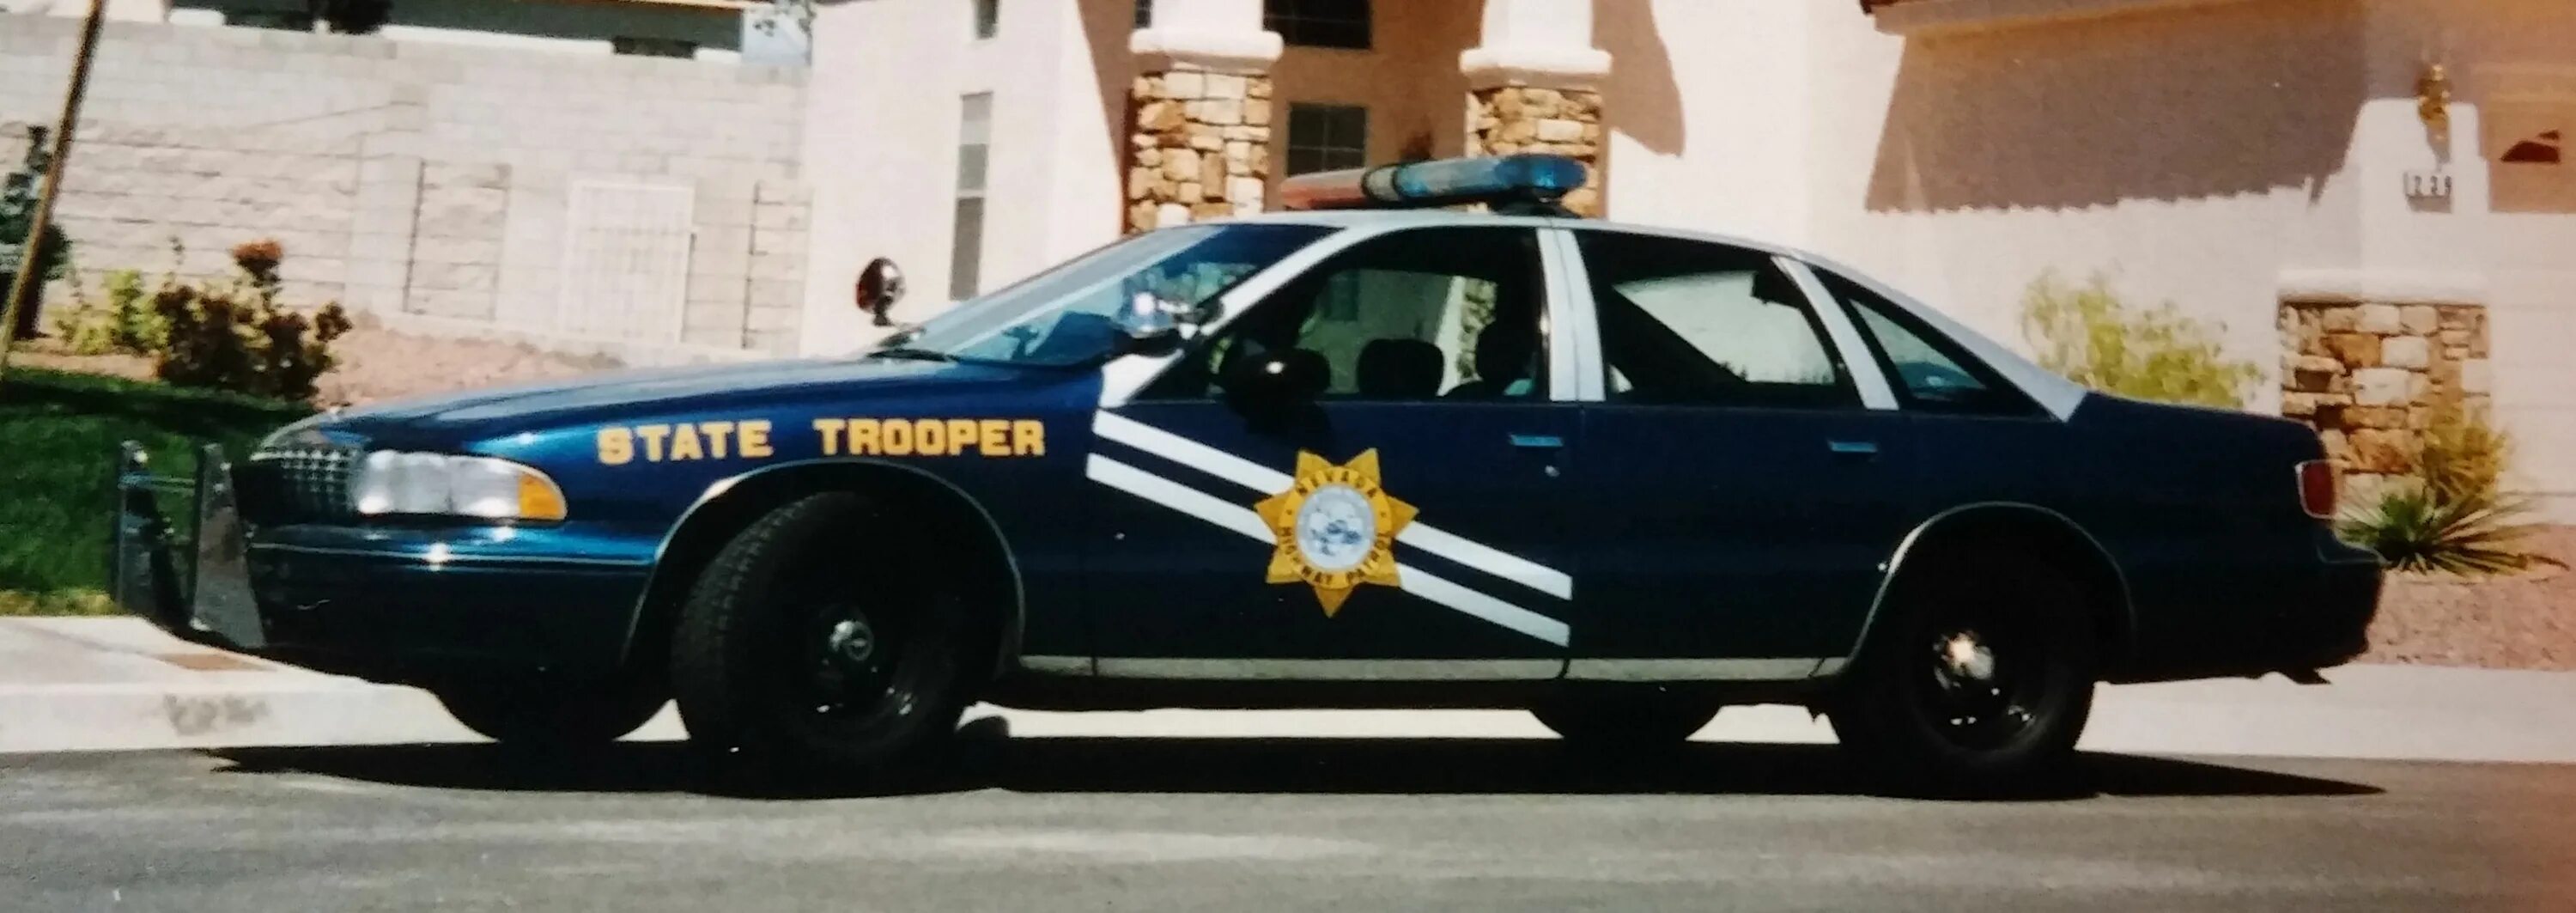 Chevrolet Caprice 9c1. Chevrolet Caprice 1994 Police. 1991 Chevrolet Caprice 9c1 Police. Chevrolet Caprice 1992 Police. Highway patrol перевод